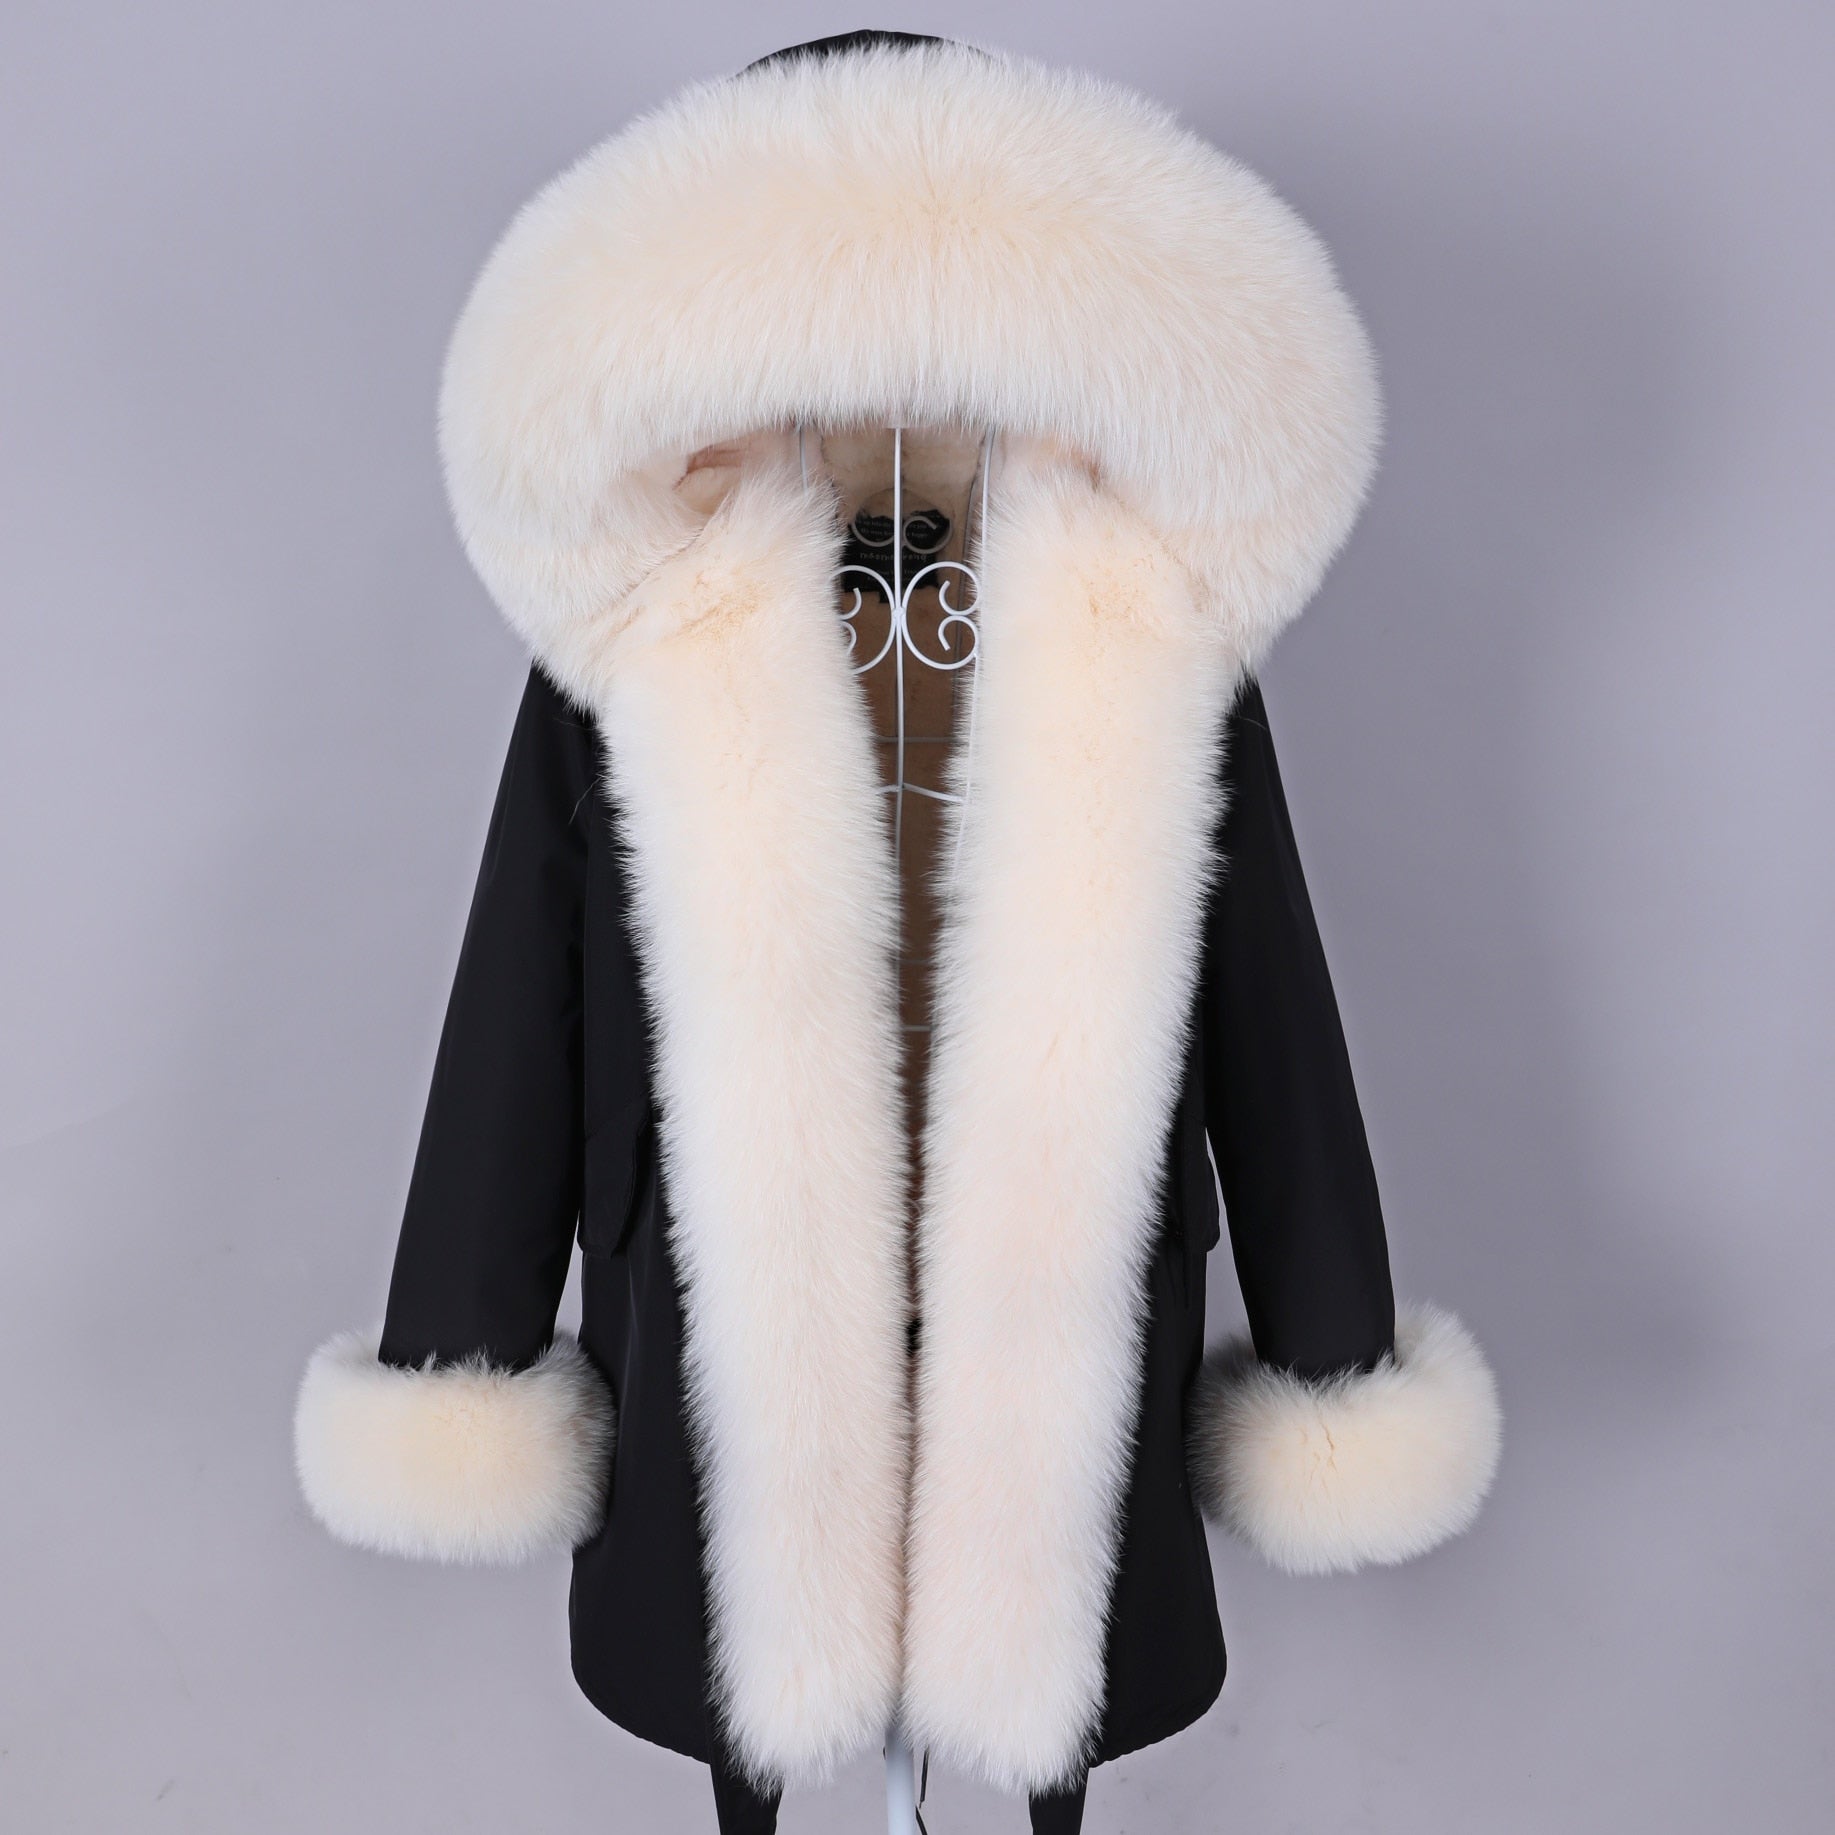 Color 08 Winter Woman Parkas Super Big Removable Real Fox Fur Collar Coats Long Hooded Jacket Overcoat Clothes  -  GeraldBlack.com